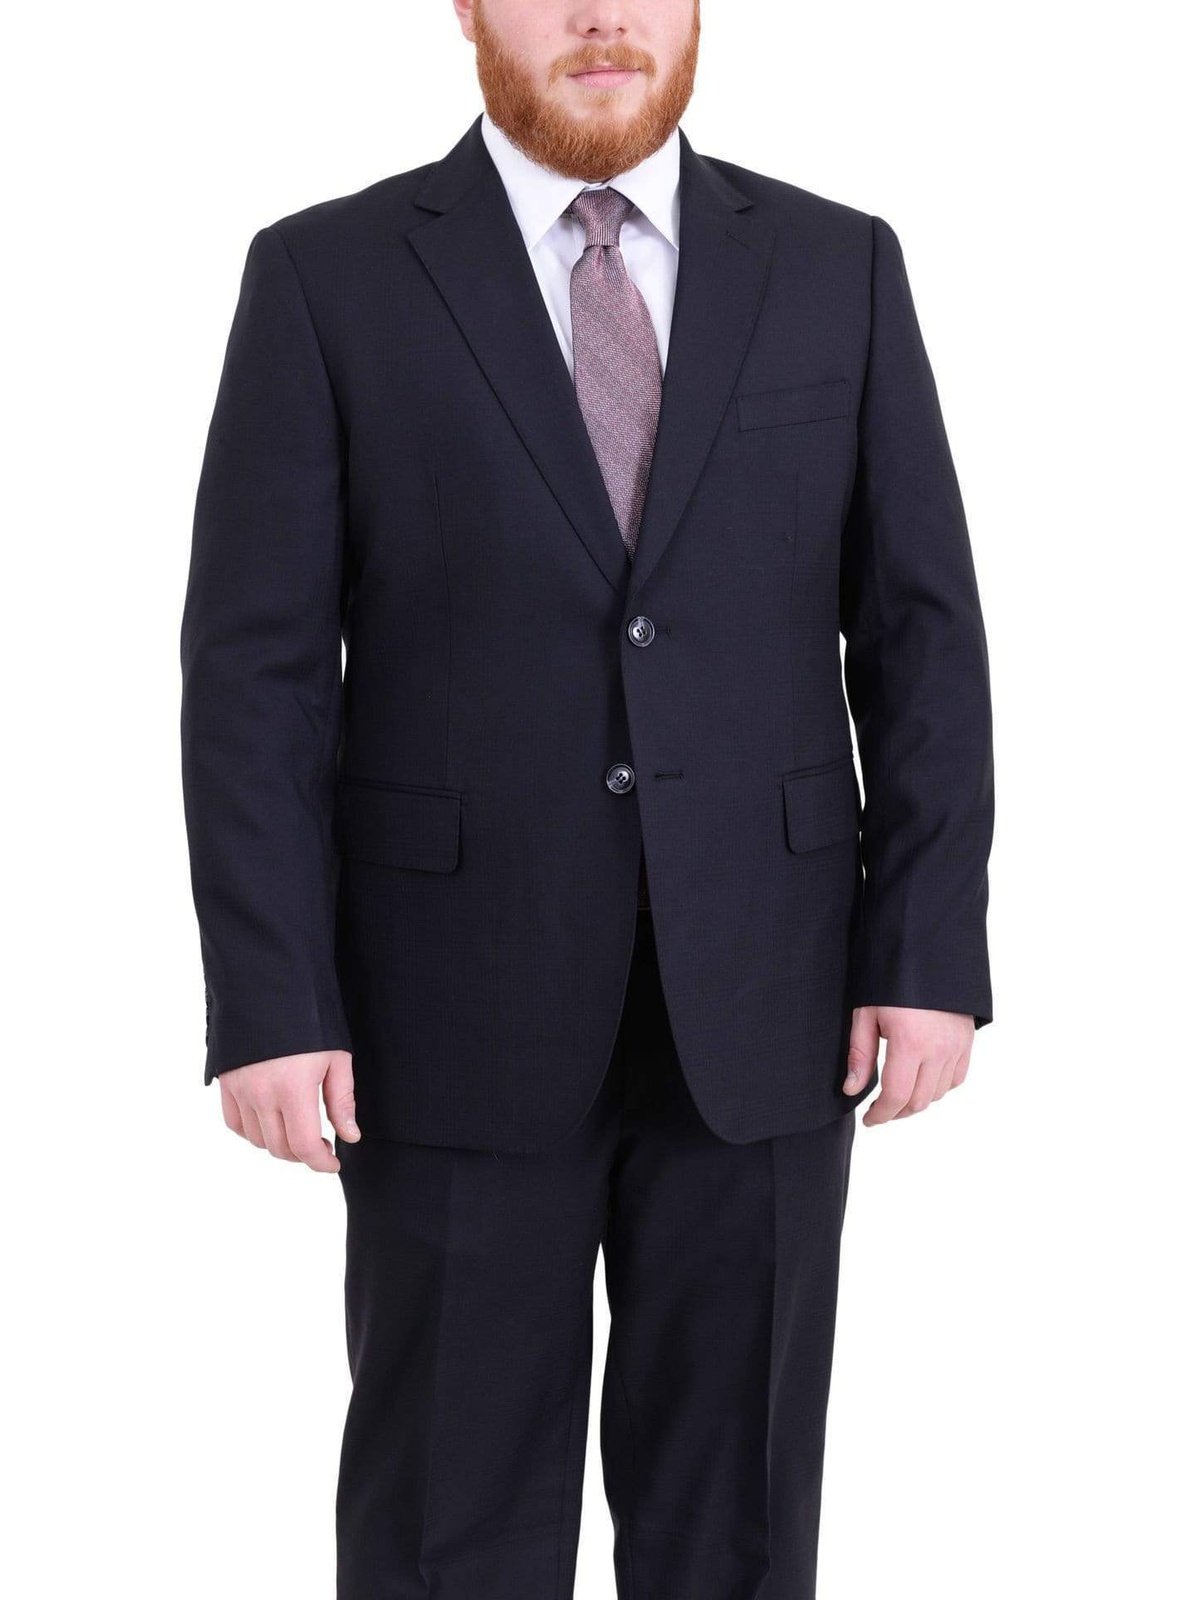 Arthur Black Sale Suits Men&#39;s Arthur Black Executive Portly Fit Navy Blue Plaid Two Button Wool Suit